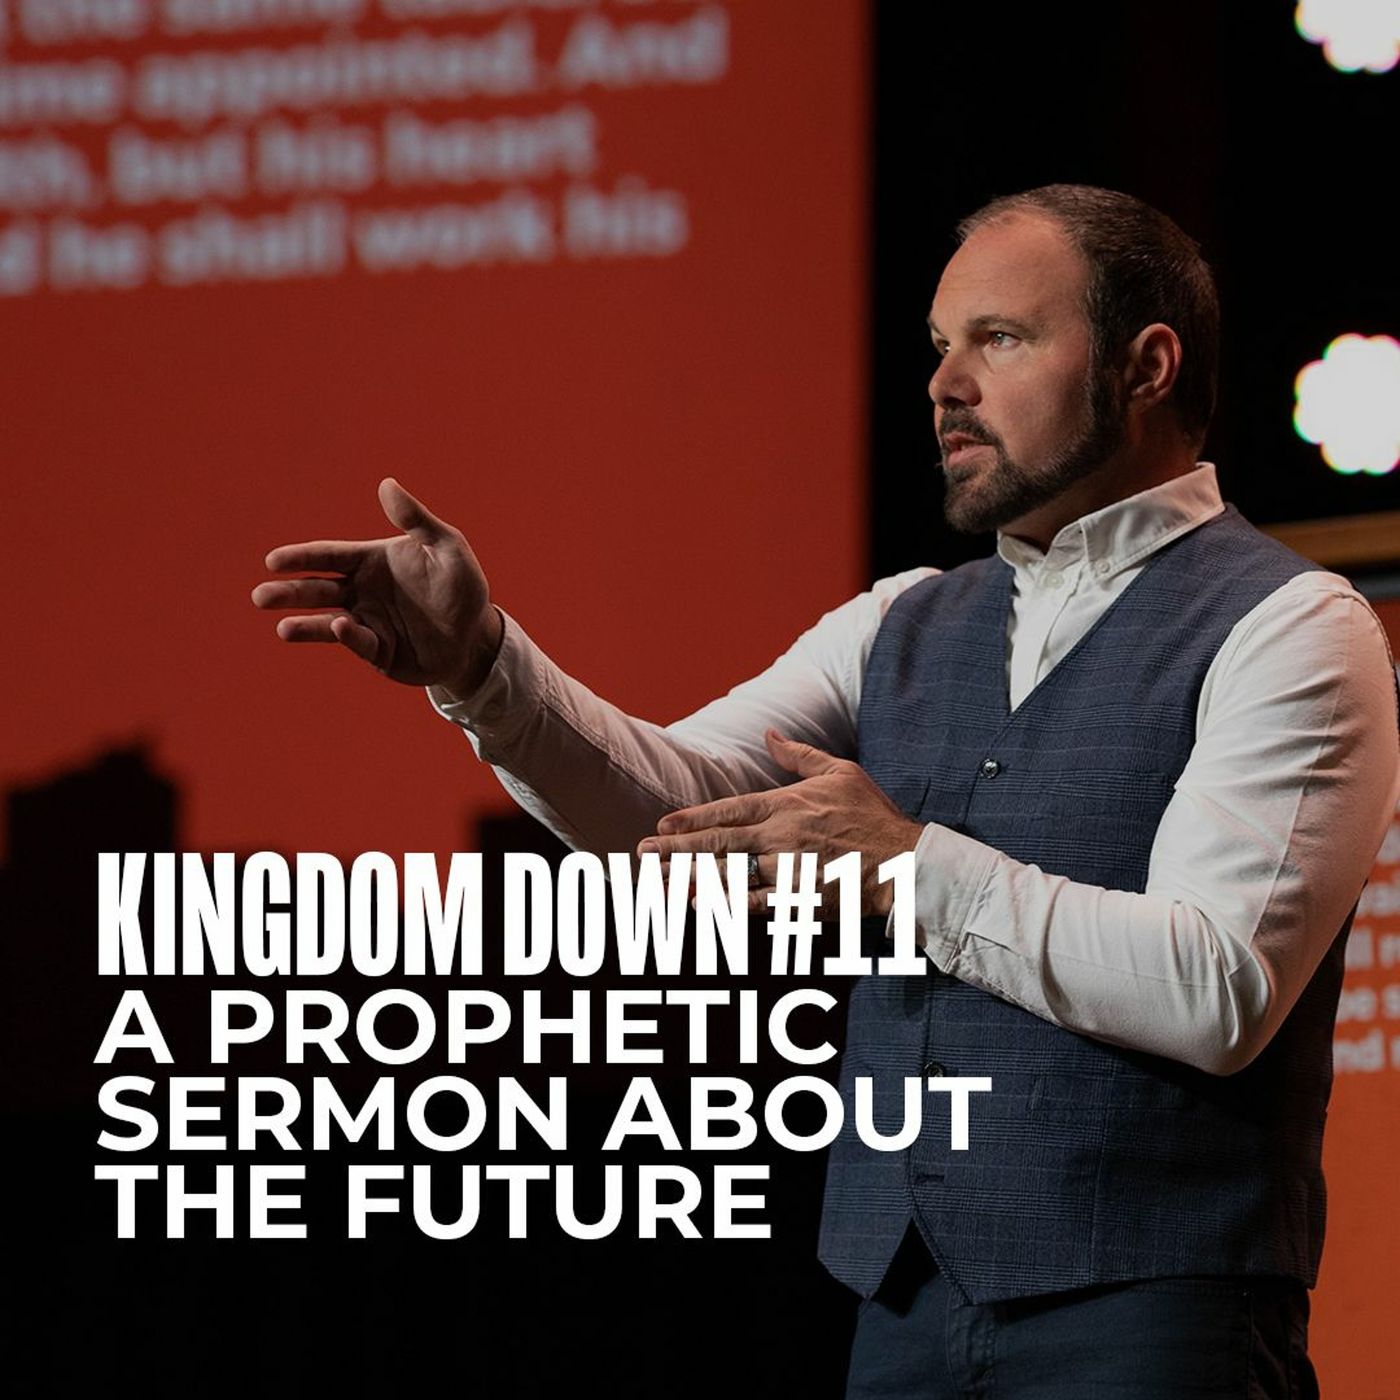 Kingdom Down #11 - A Prophetic Sermon About the Future